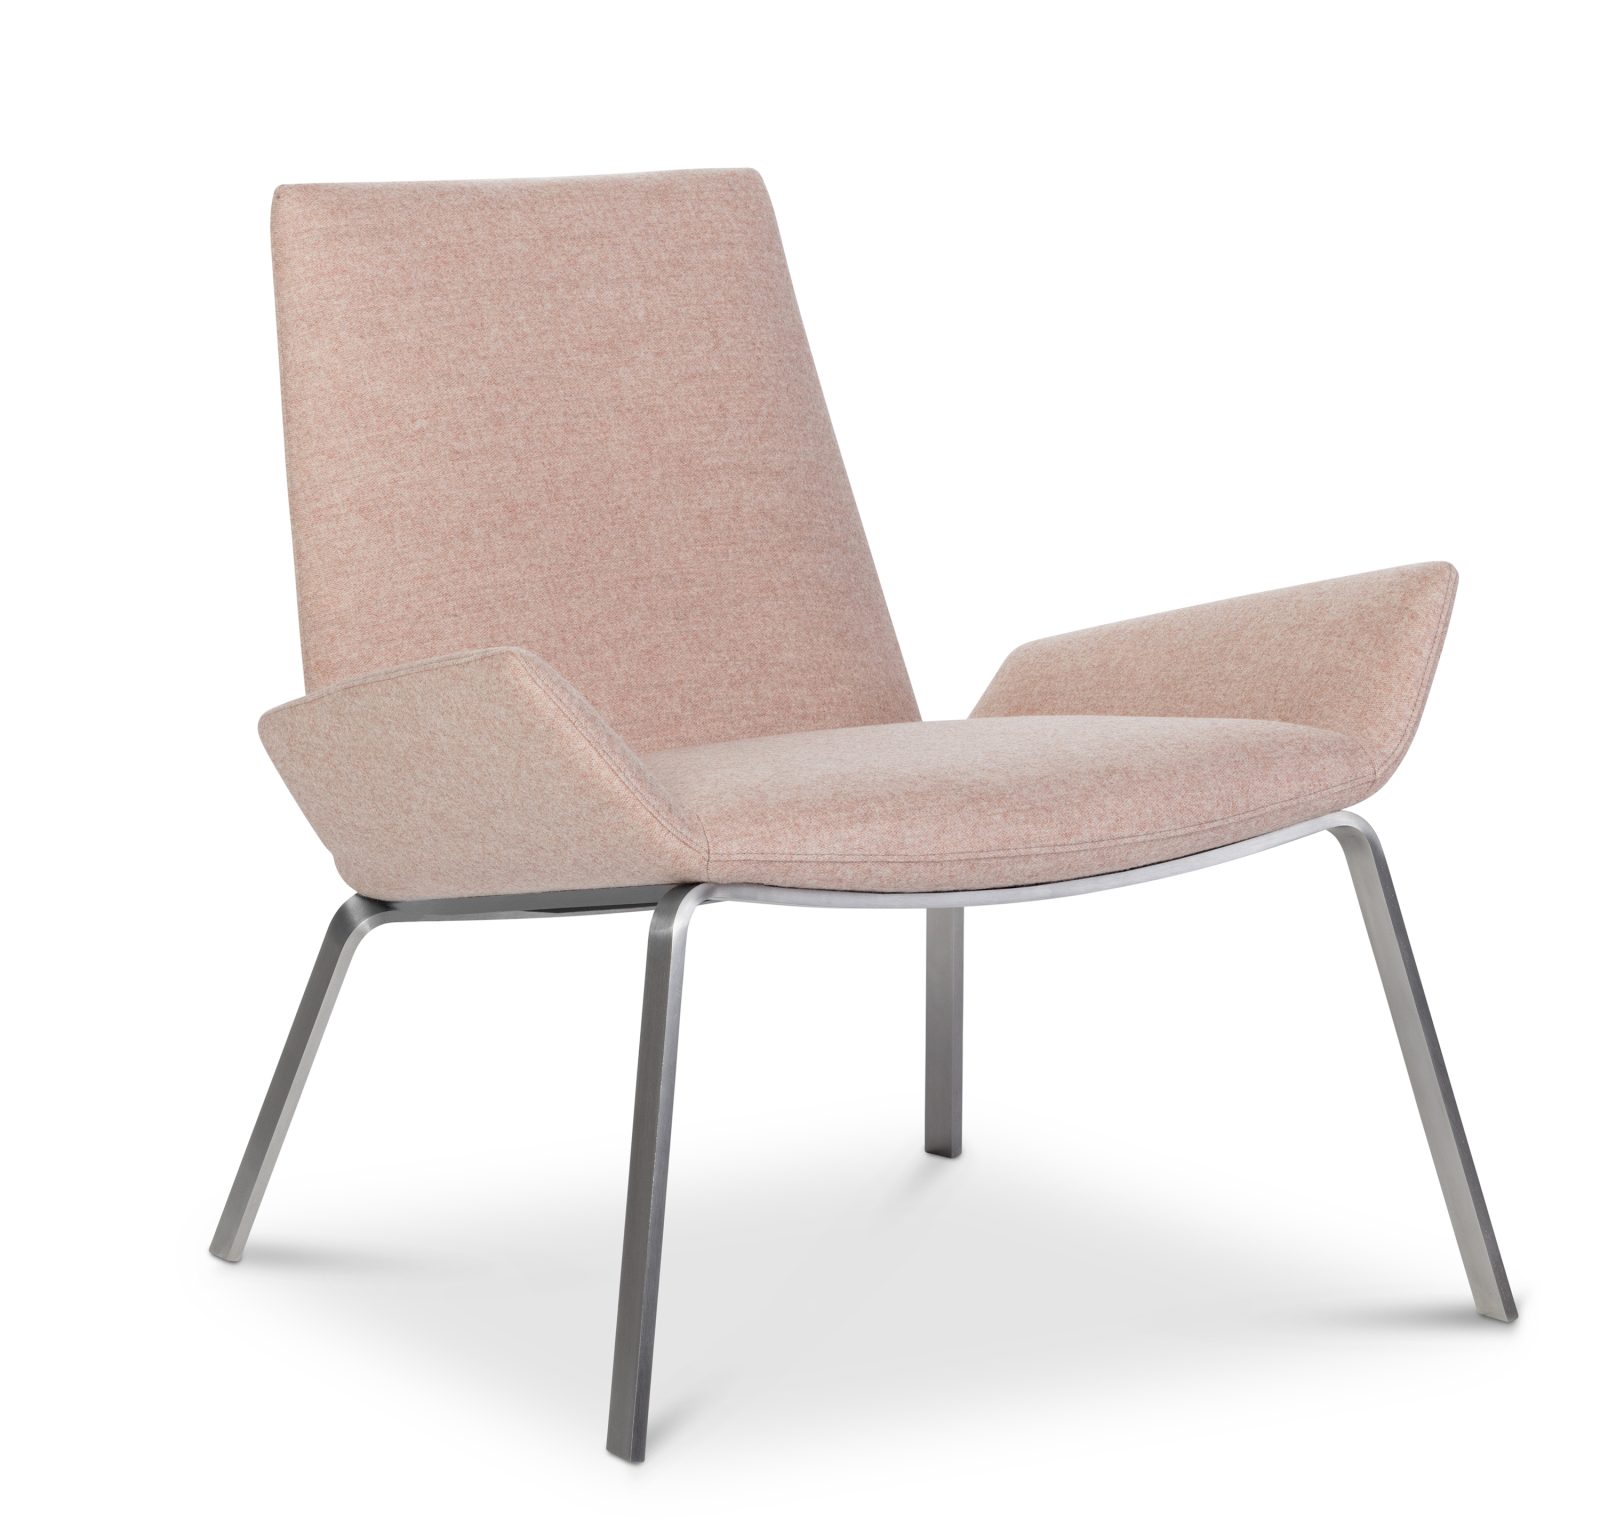 Productafbeelding van Design on Stock fauteuil Komio Onyx